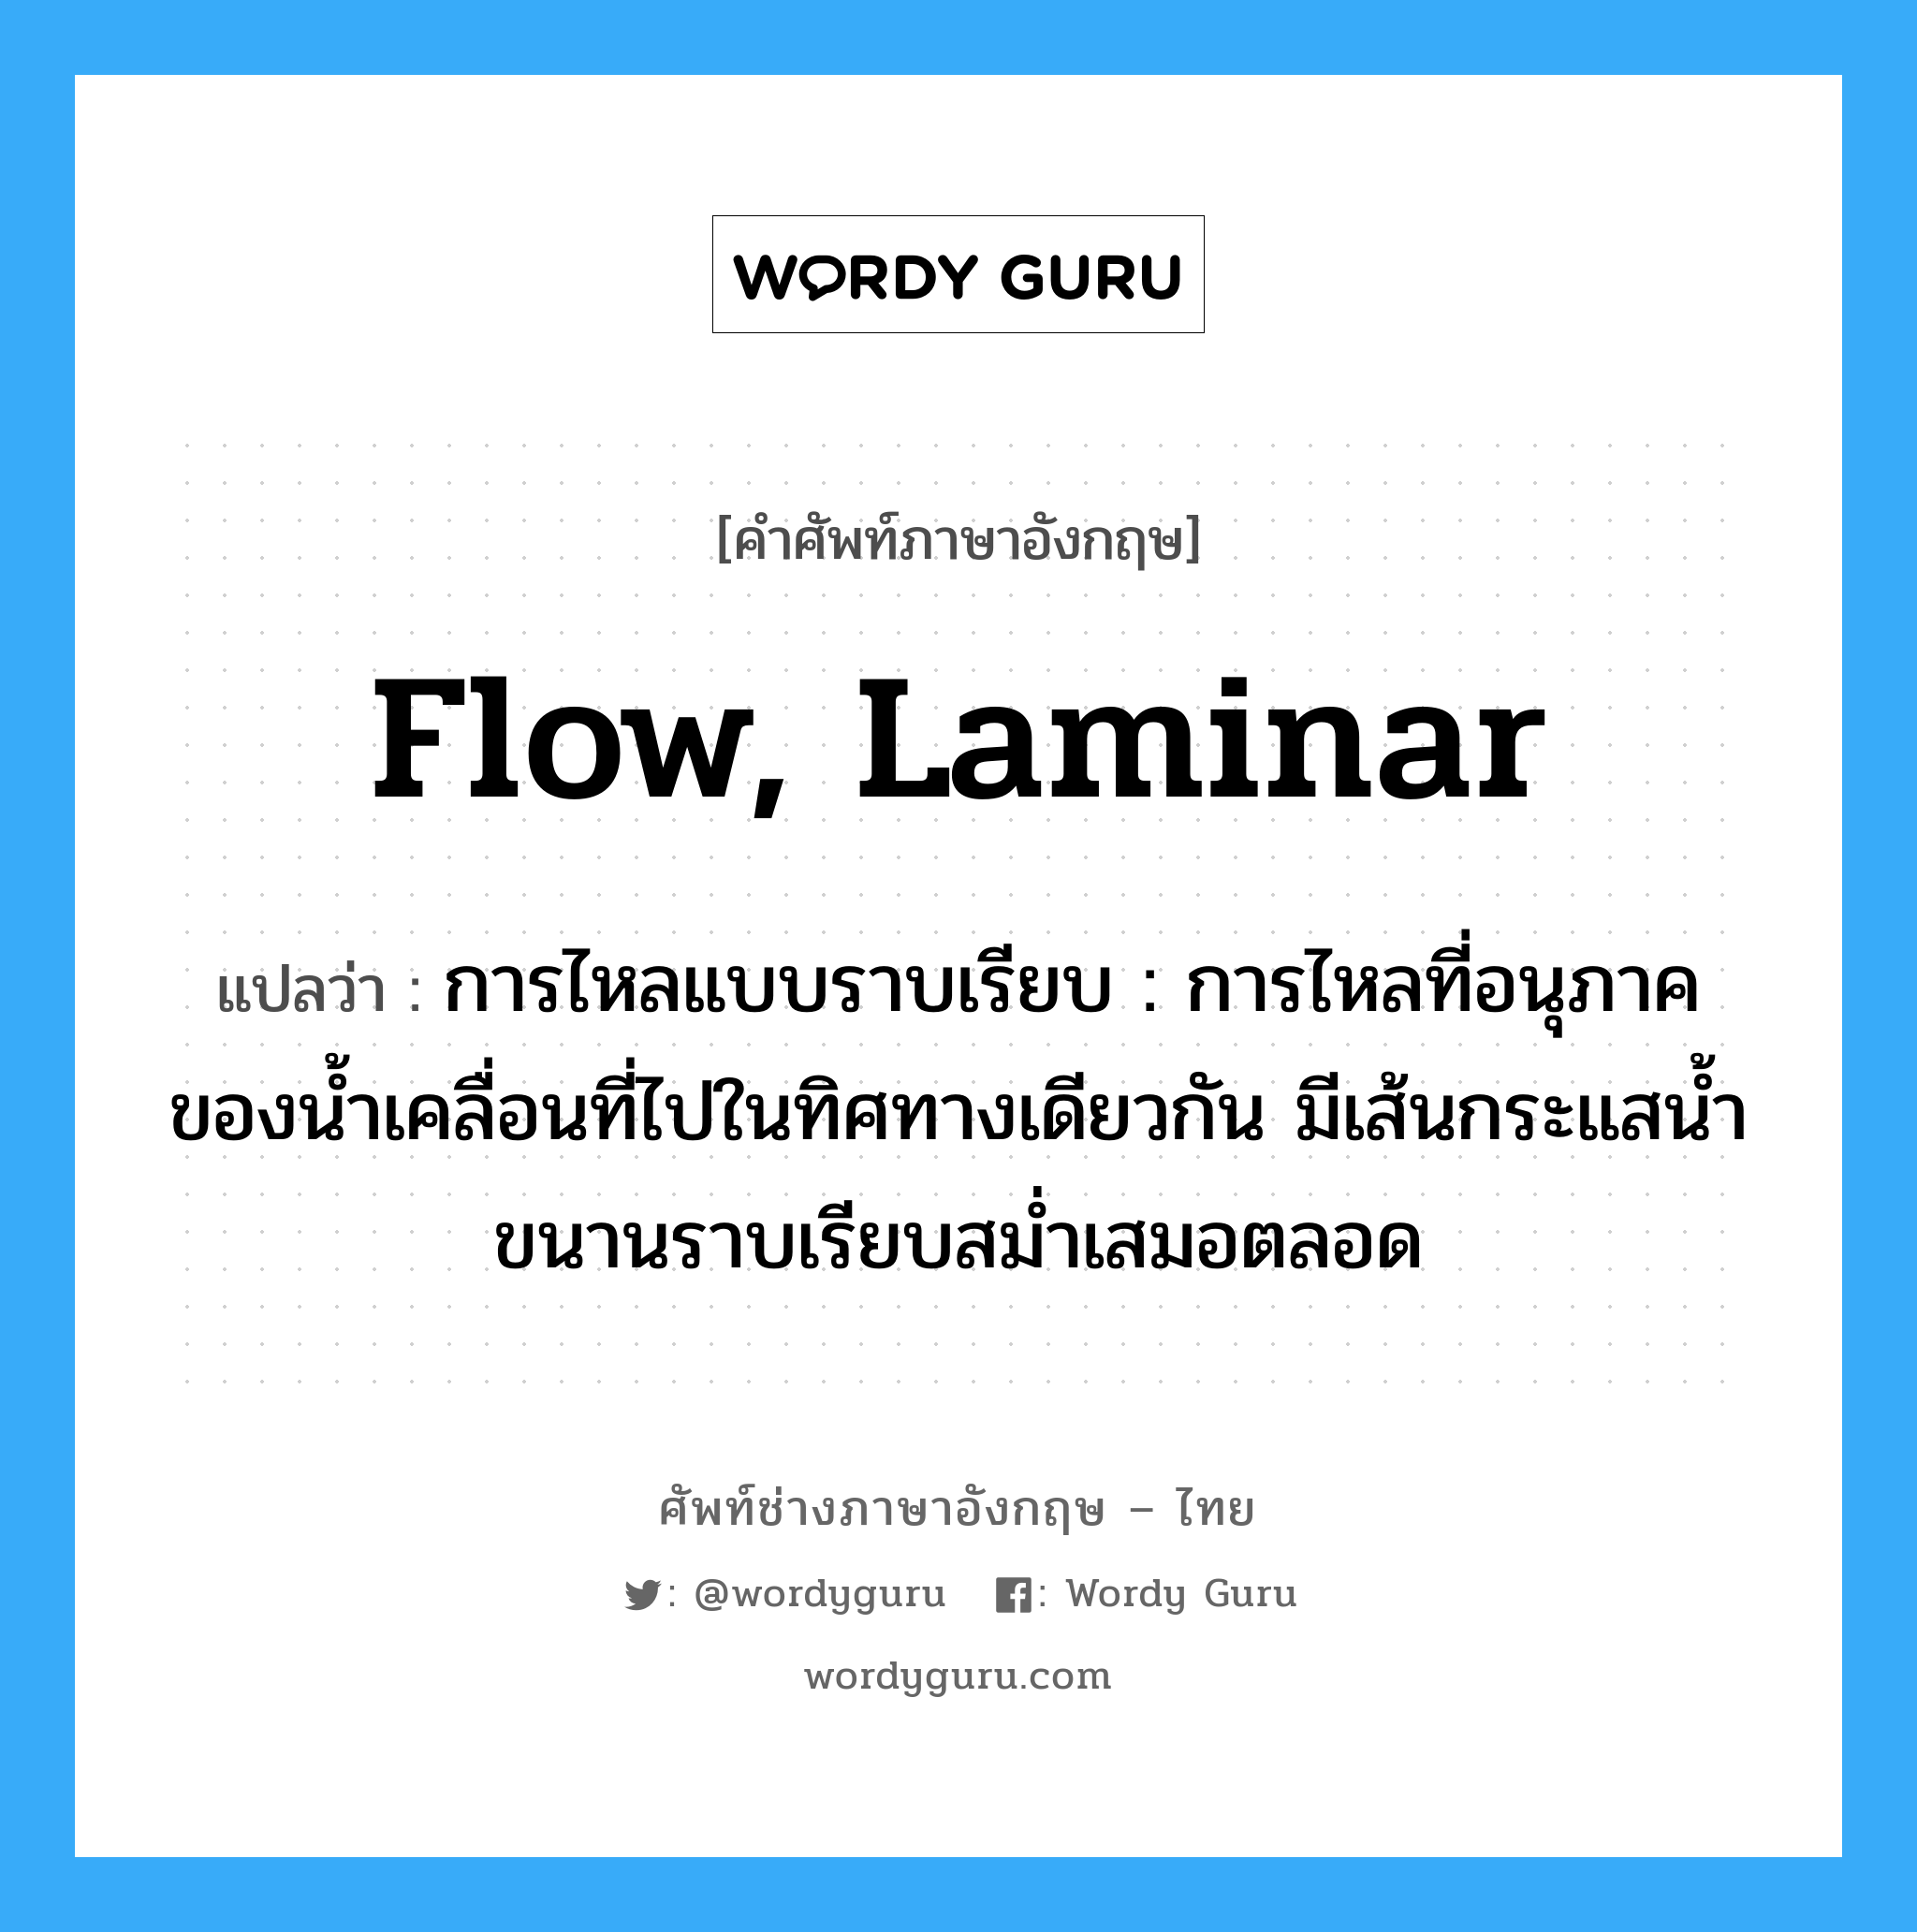 flow, laminar แปลว่า?, คำศัพท์ช่างภาษาอังกฤษ - ไทย flow, laminar คำศัพท์ภาษาอังกฤษ flow, laminar แปลว่า การไหลแบบราบเรียบ : การไหลที่อนุภาคของน้ำเคลื่อนที่ไปในทิศทางเดียวกัน มีเส้นกระแสน้ำขนานราบเรียบสม่ำเสมอตลอด